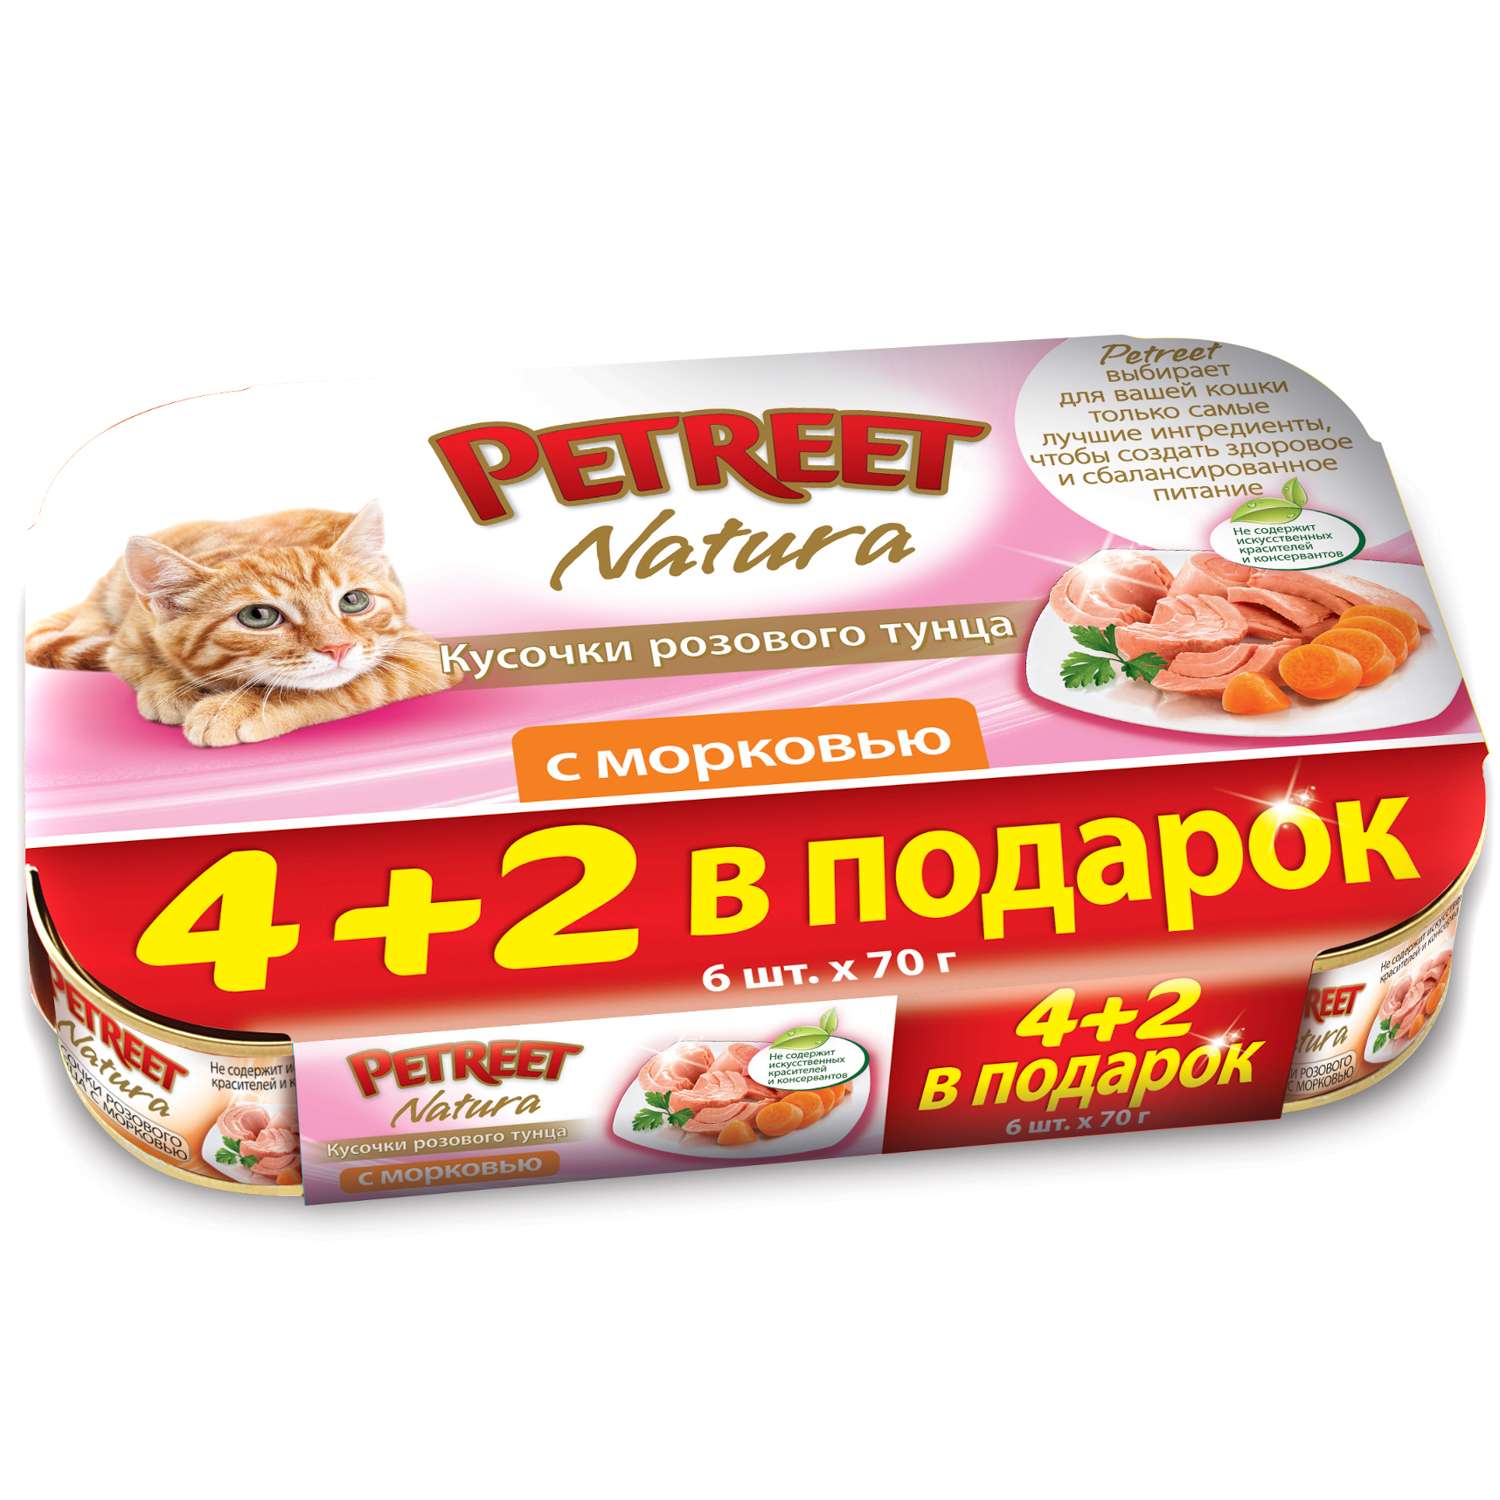 Корм влажный для кошек Petreet Multipack кусочки розового тунца с морковью - фото 1